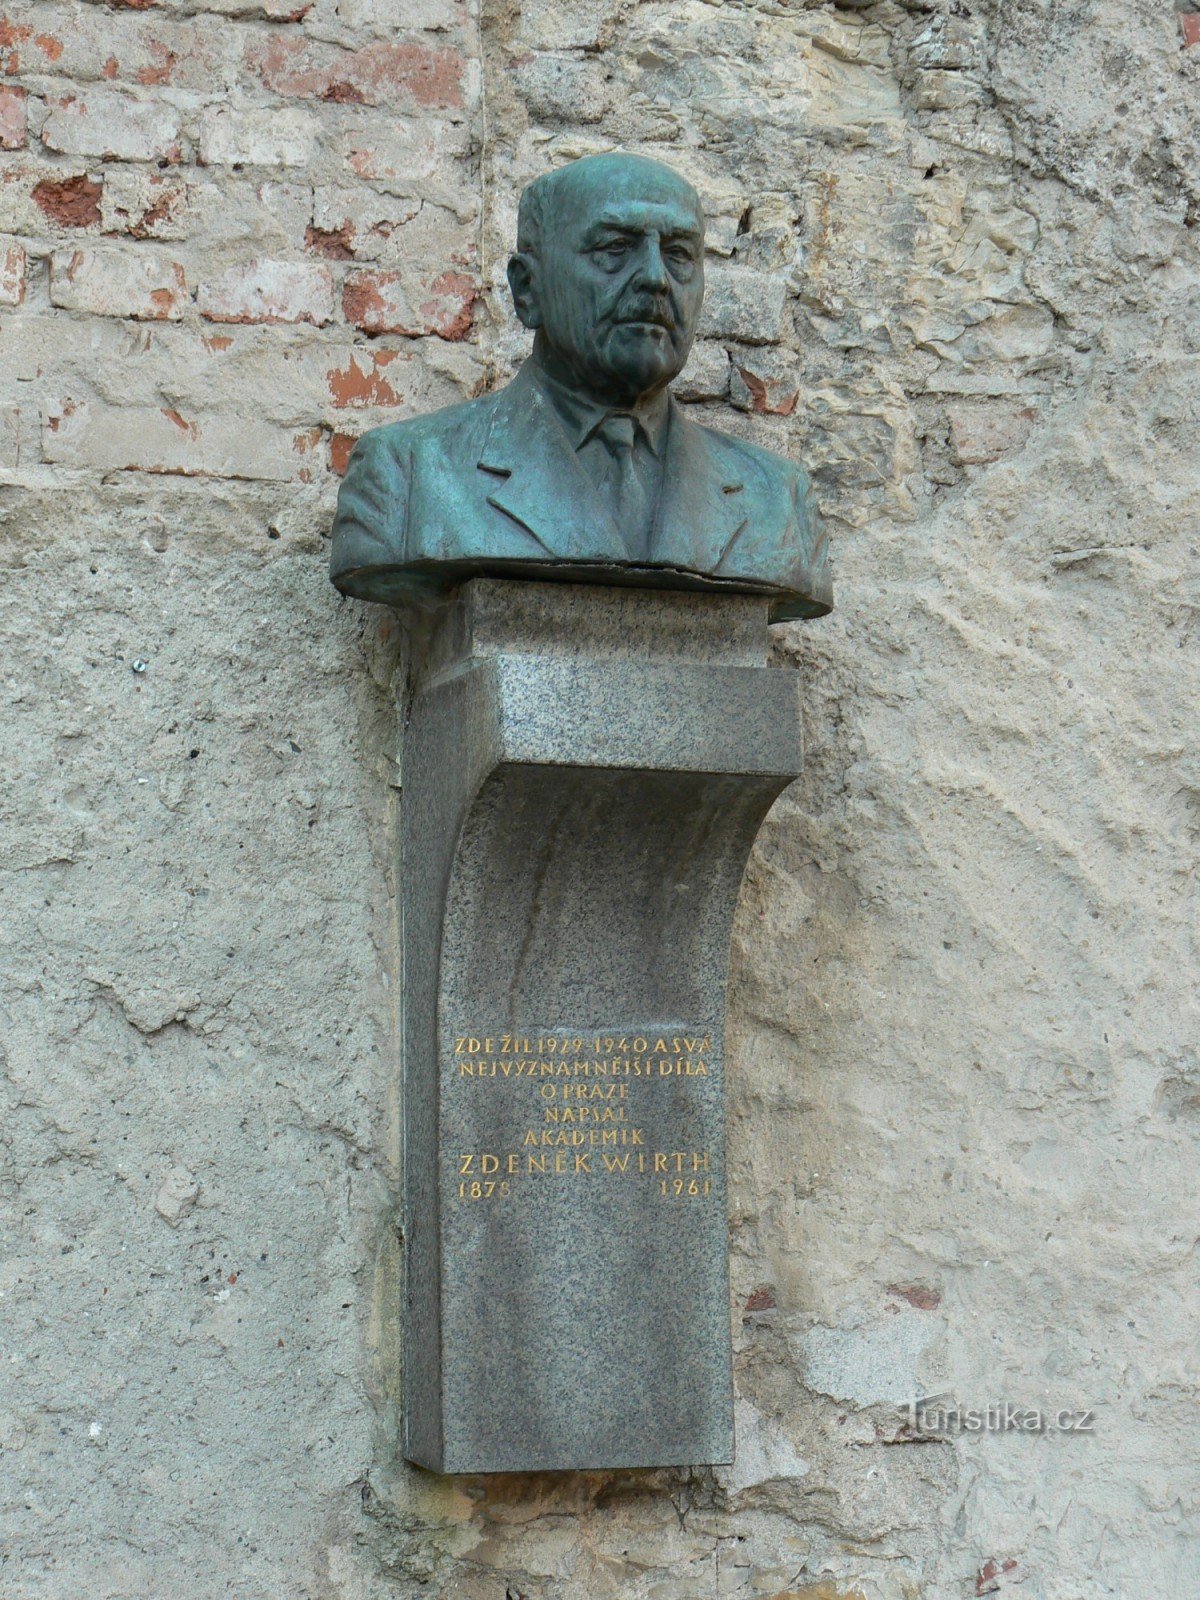 Spomen ploča Zdeněka Wirtha